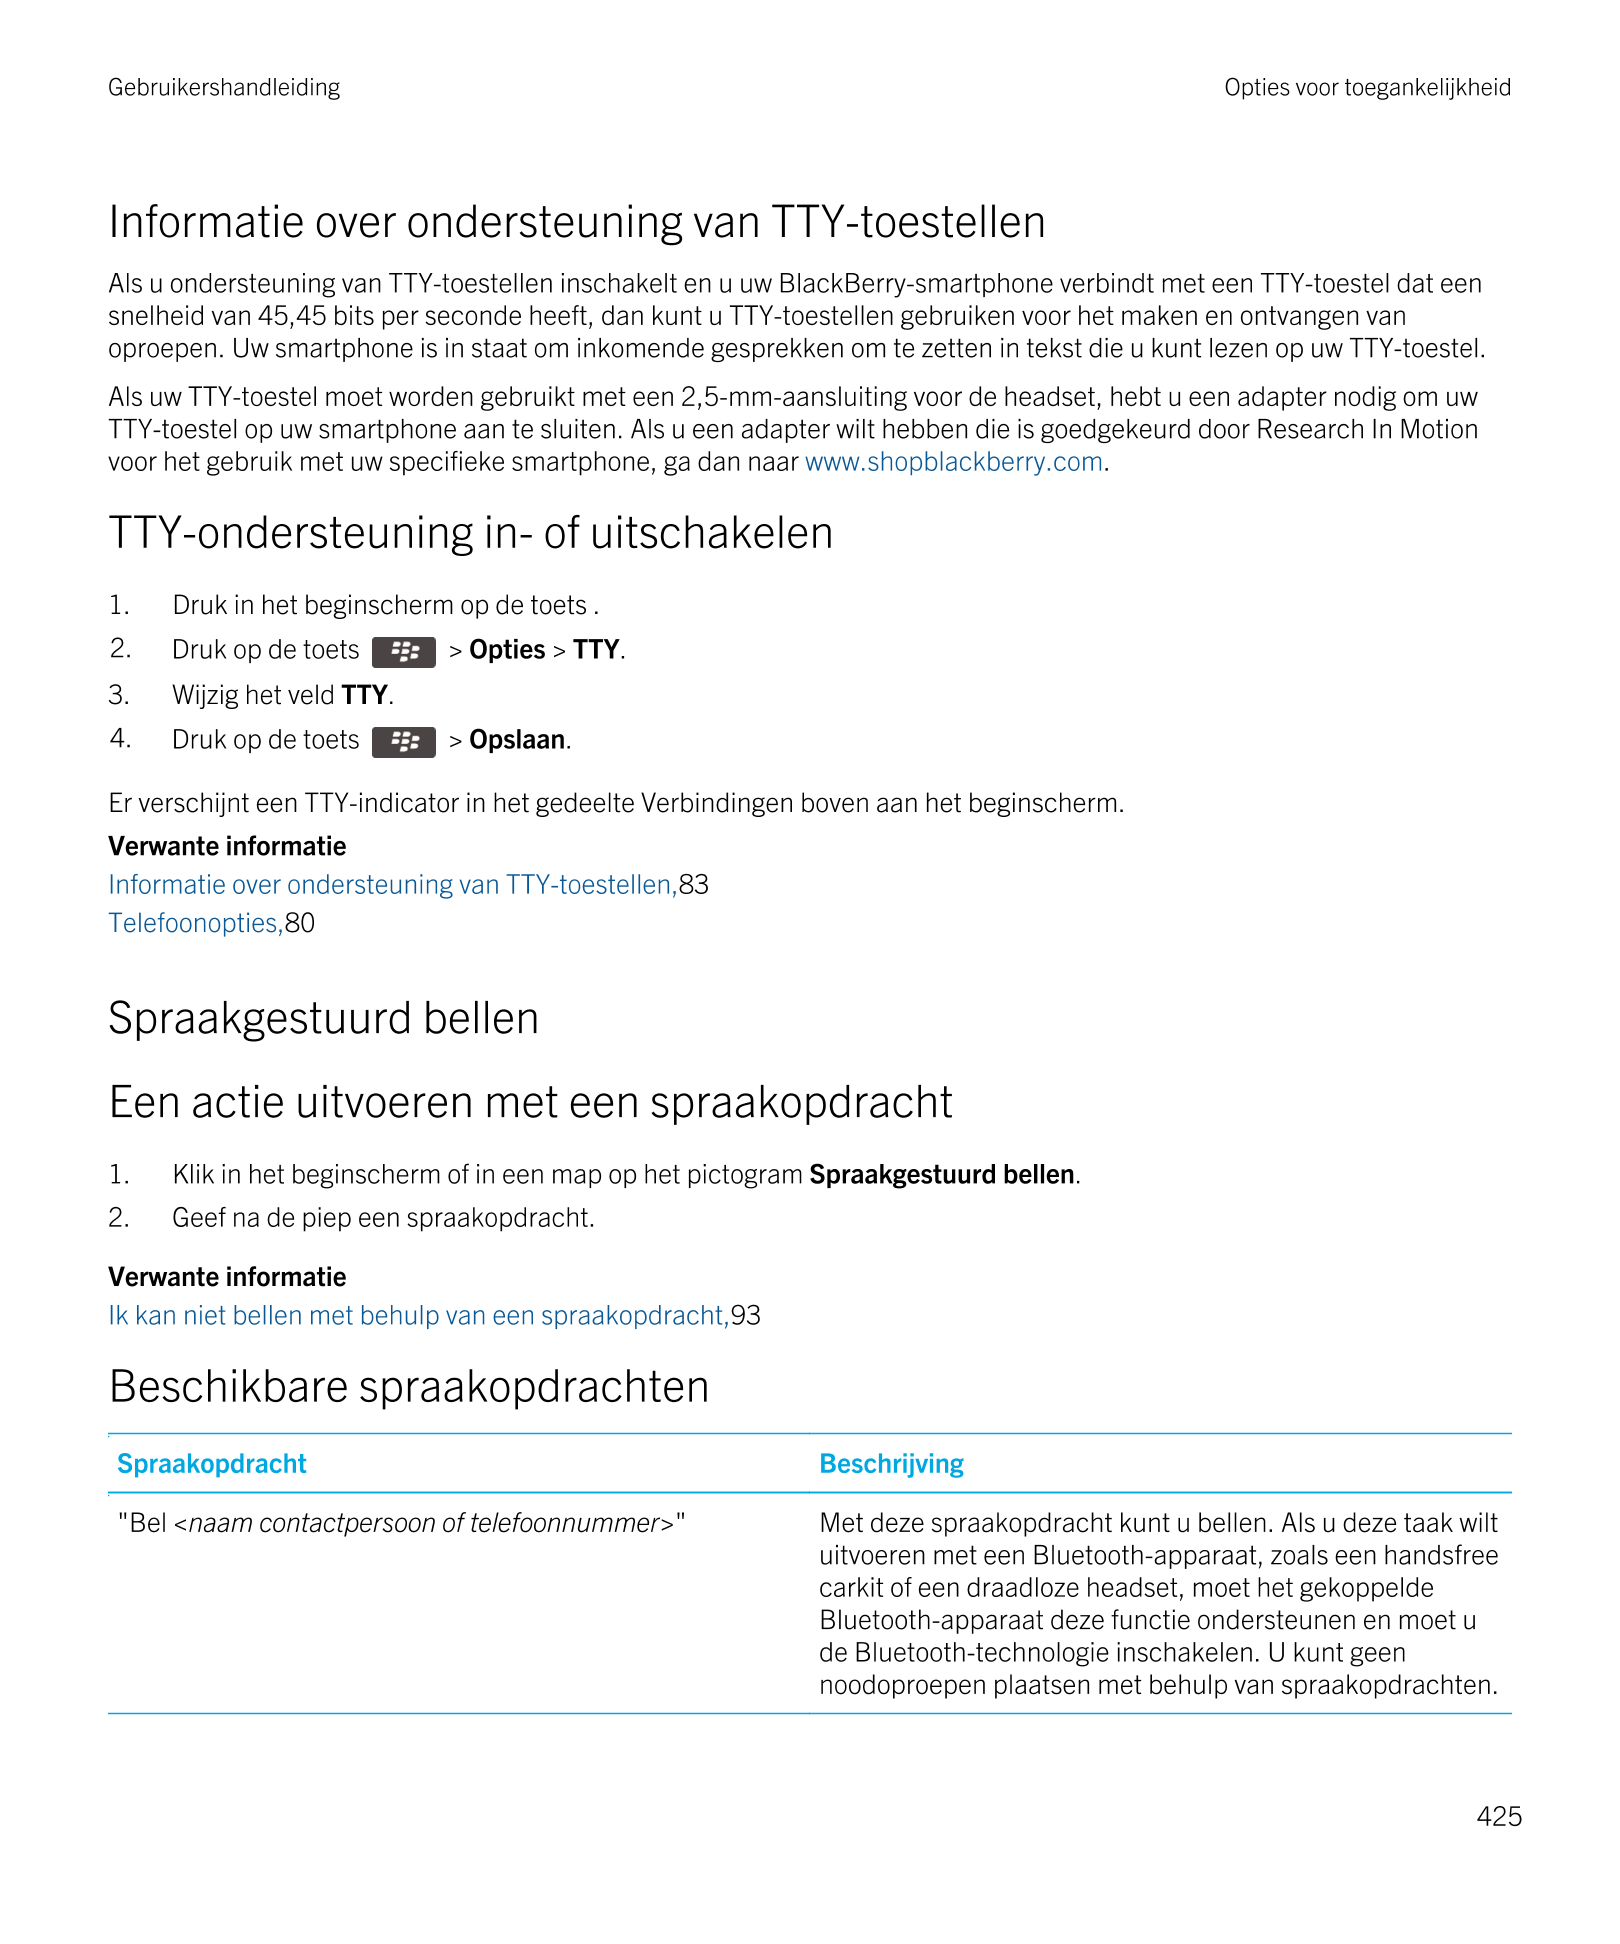 Gebruikershandleiding Opties voor toegankelijkheid
Informatie over ondersteuning van TTY-toestellen
Als u ondersteuning van TTY-